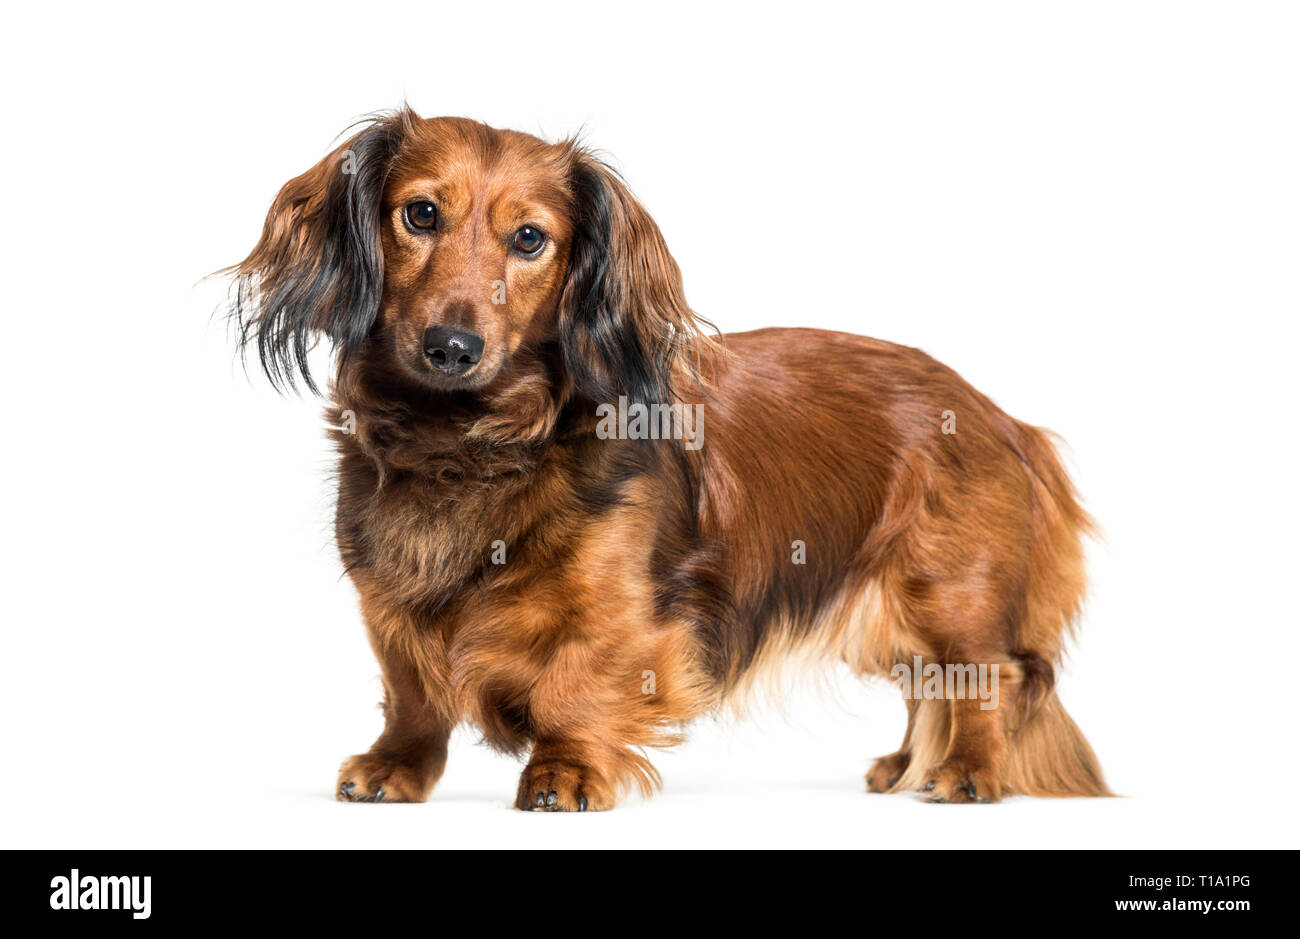 Dackel, Wurst Hund, Wiener Hund vor weißem Hintergrund Stockfoto